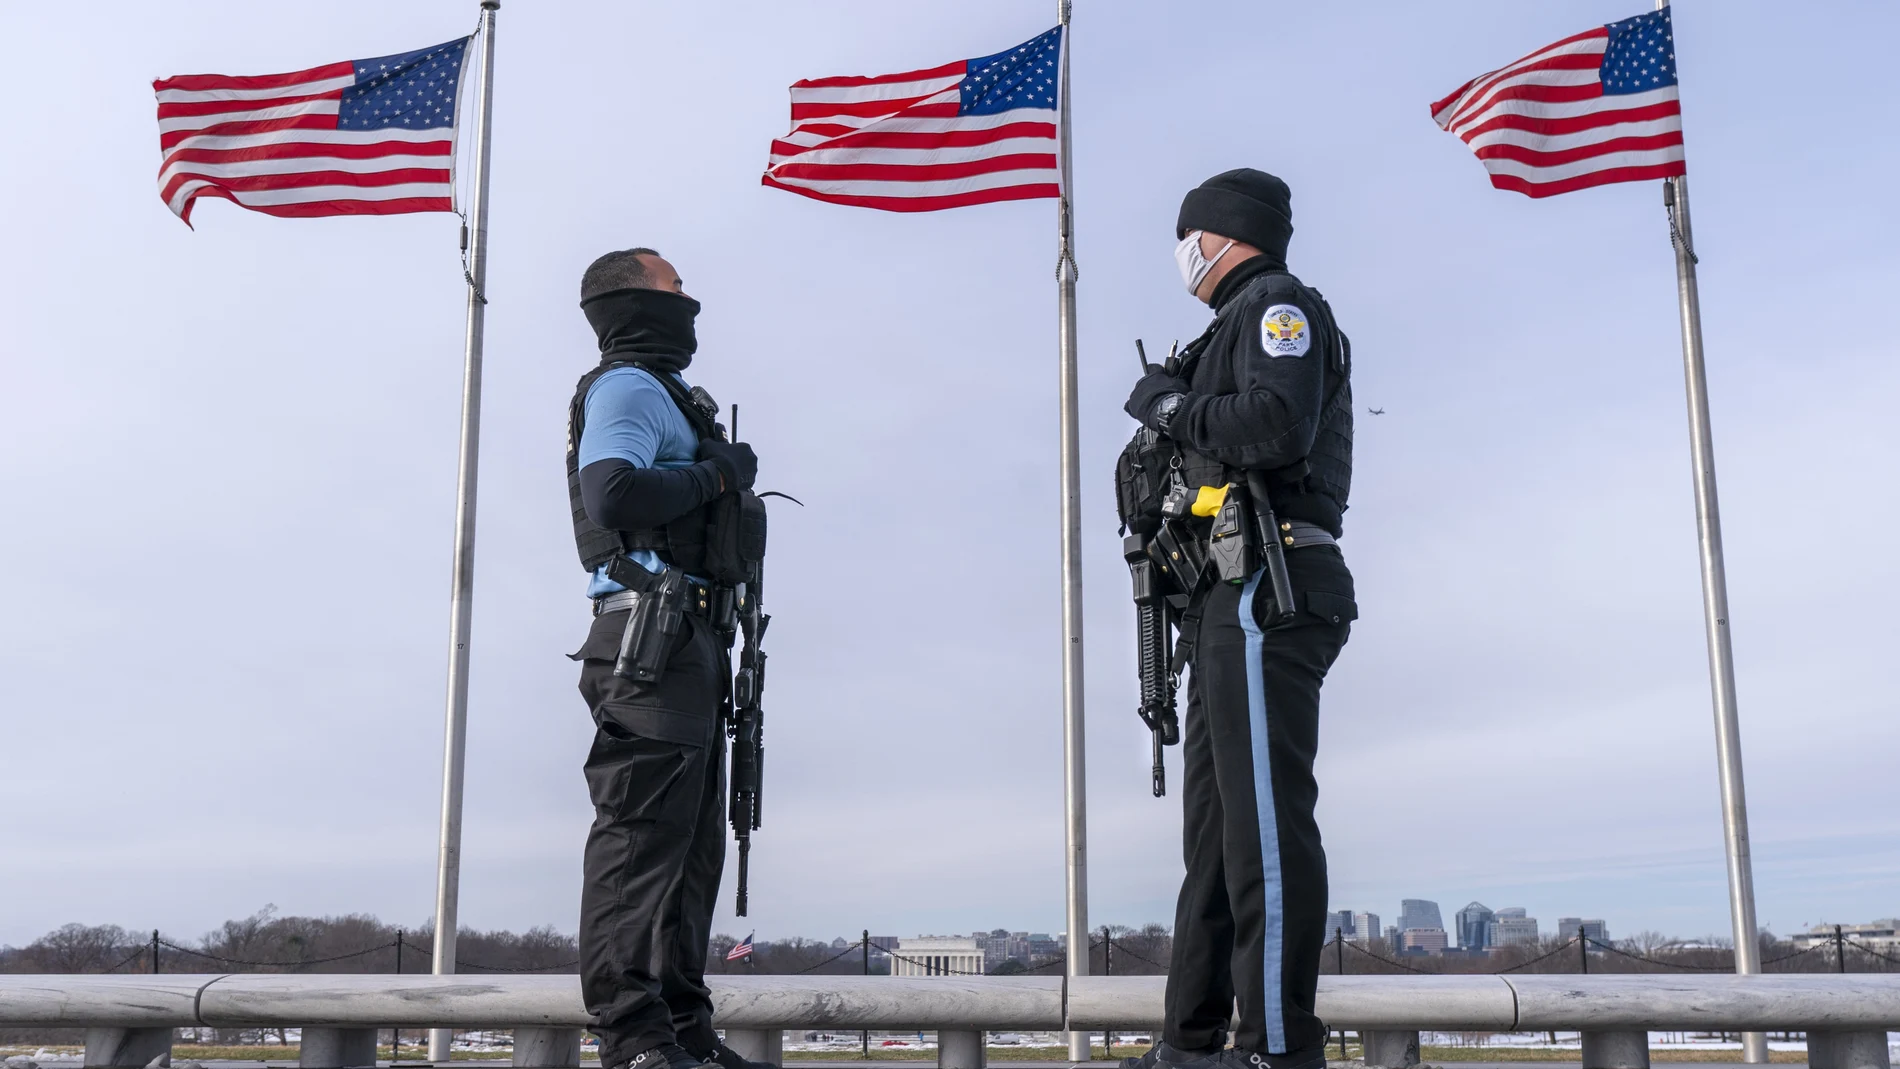 Un año después del ataque al Capitolio de EE UU, la Policía patrulla en el Monumento a Washington, con el Monumento a Lincoln en el fondo